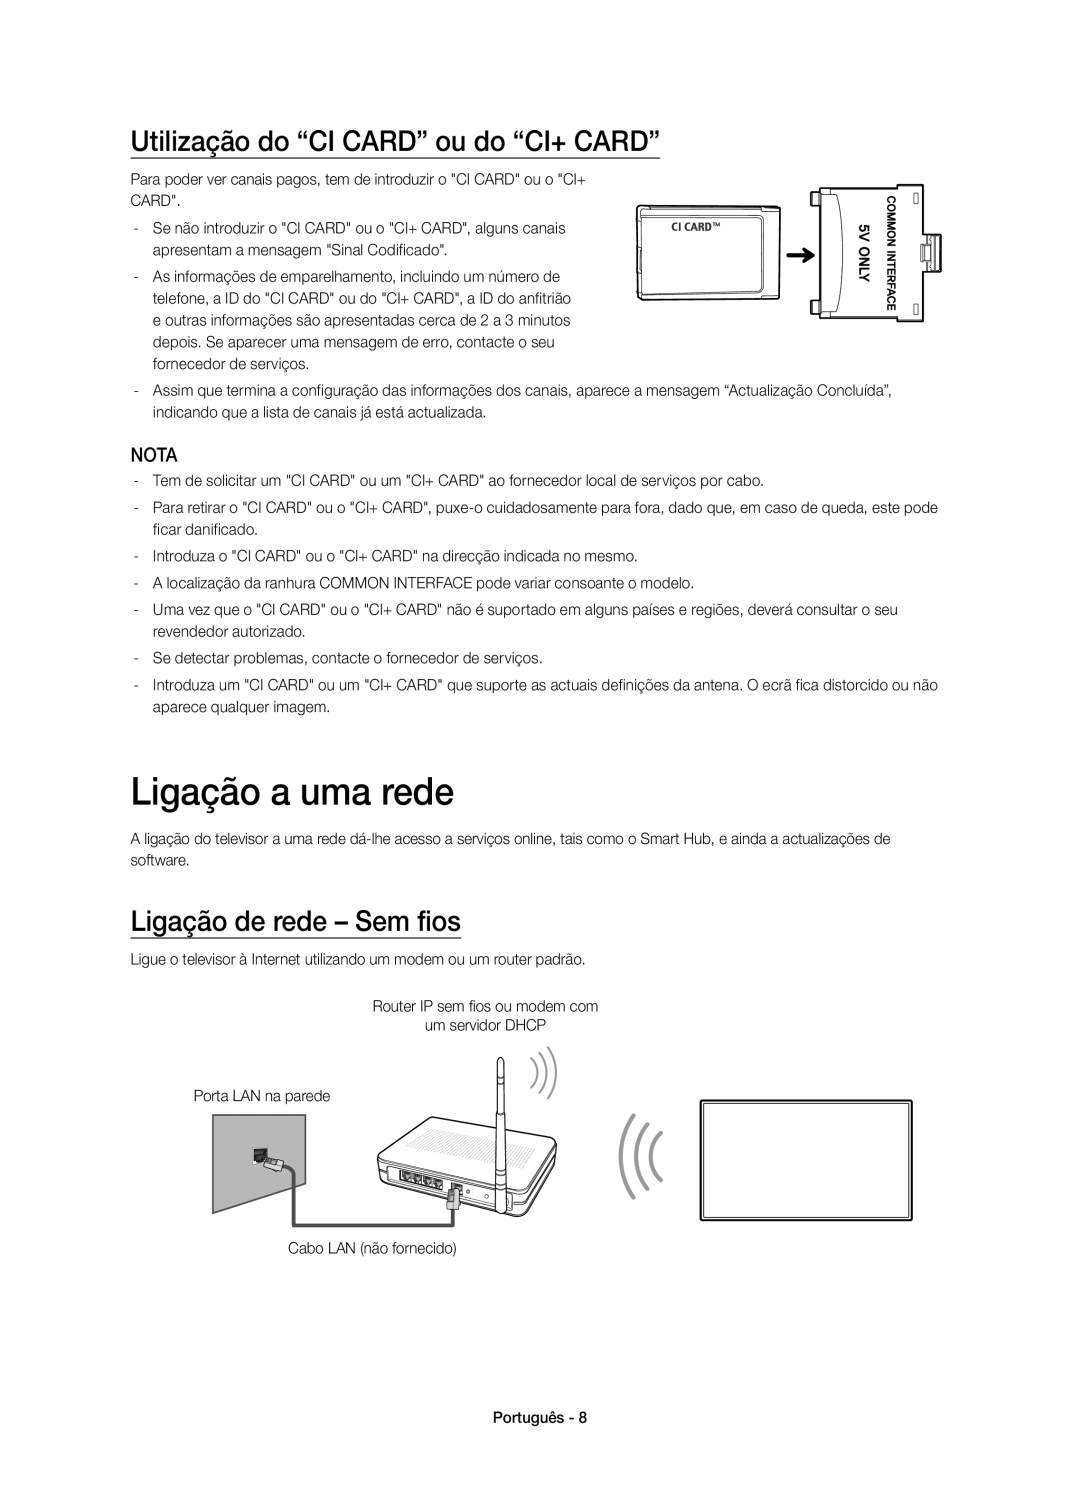 Samsung UE55H6410SSXXC Ligação a uma rede, Utilização do “CI CARD” ou do “CI+ CARD”, Ligação de rede - Sem fios, Nota 